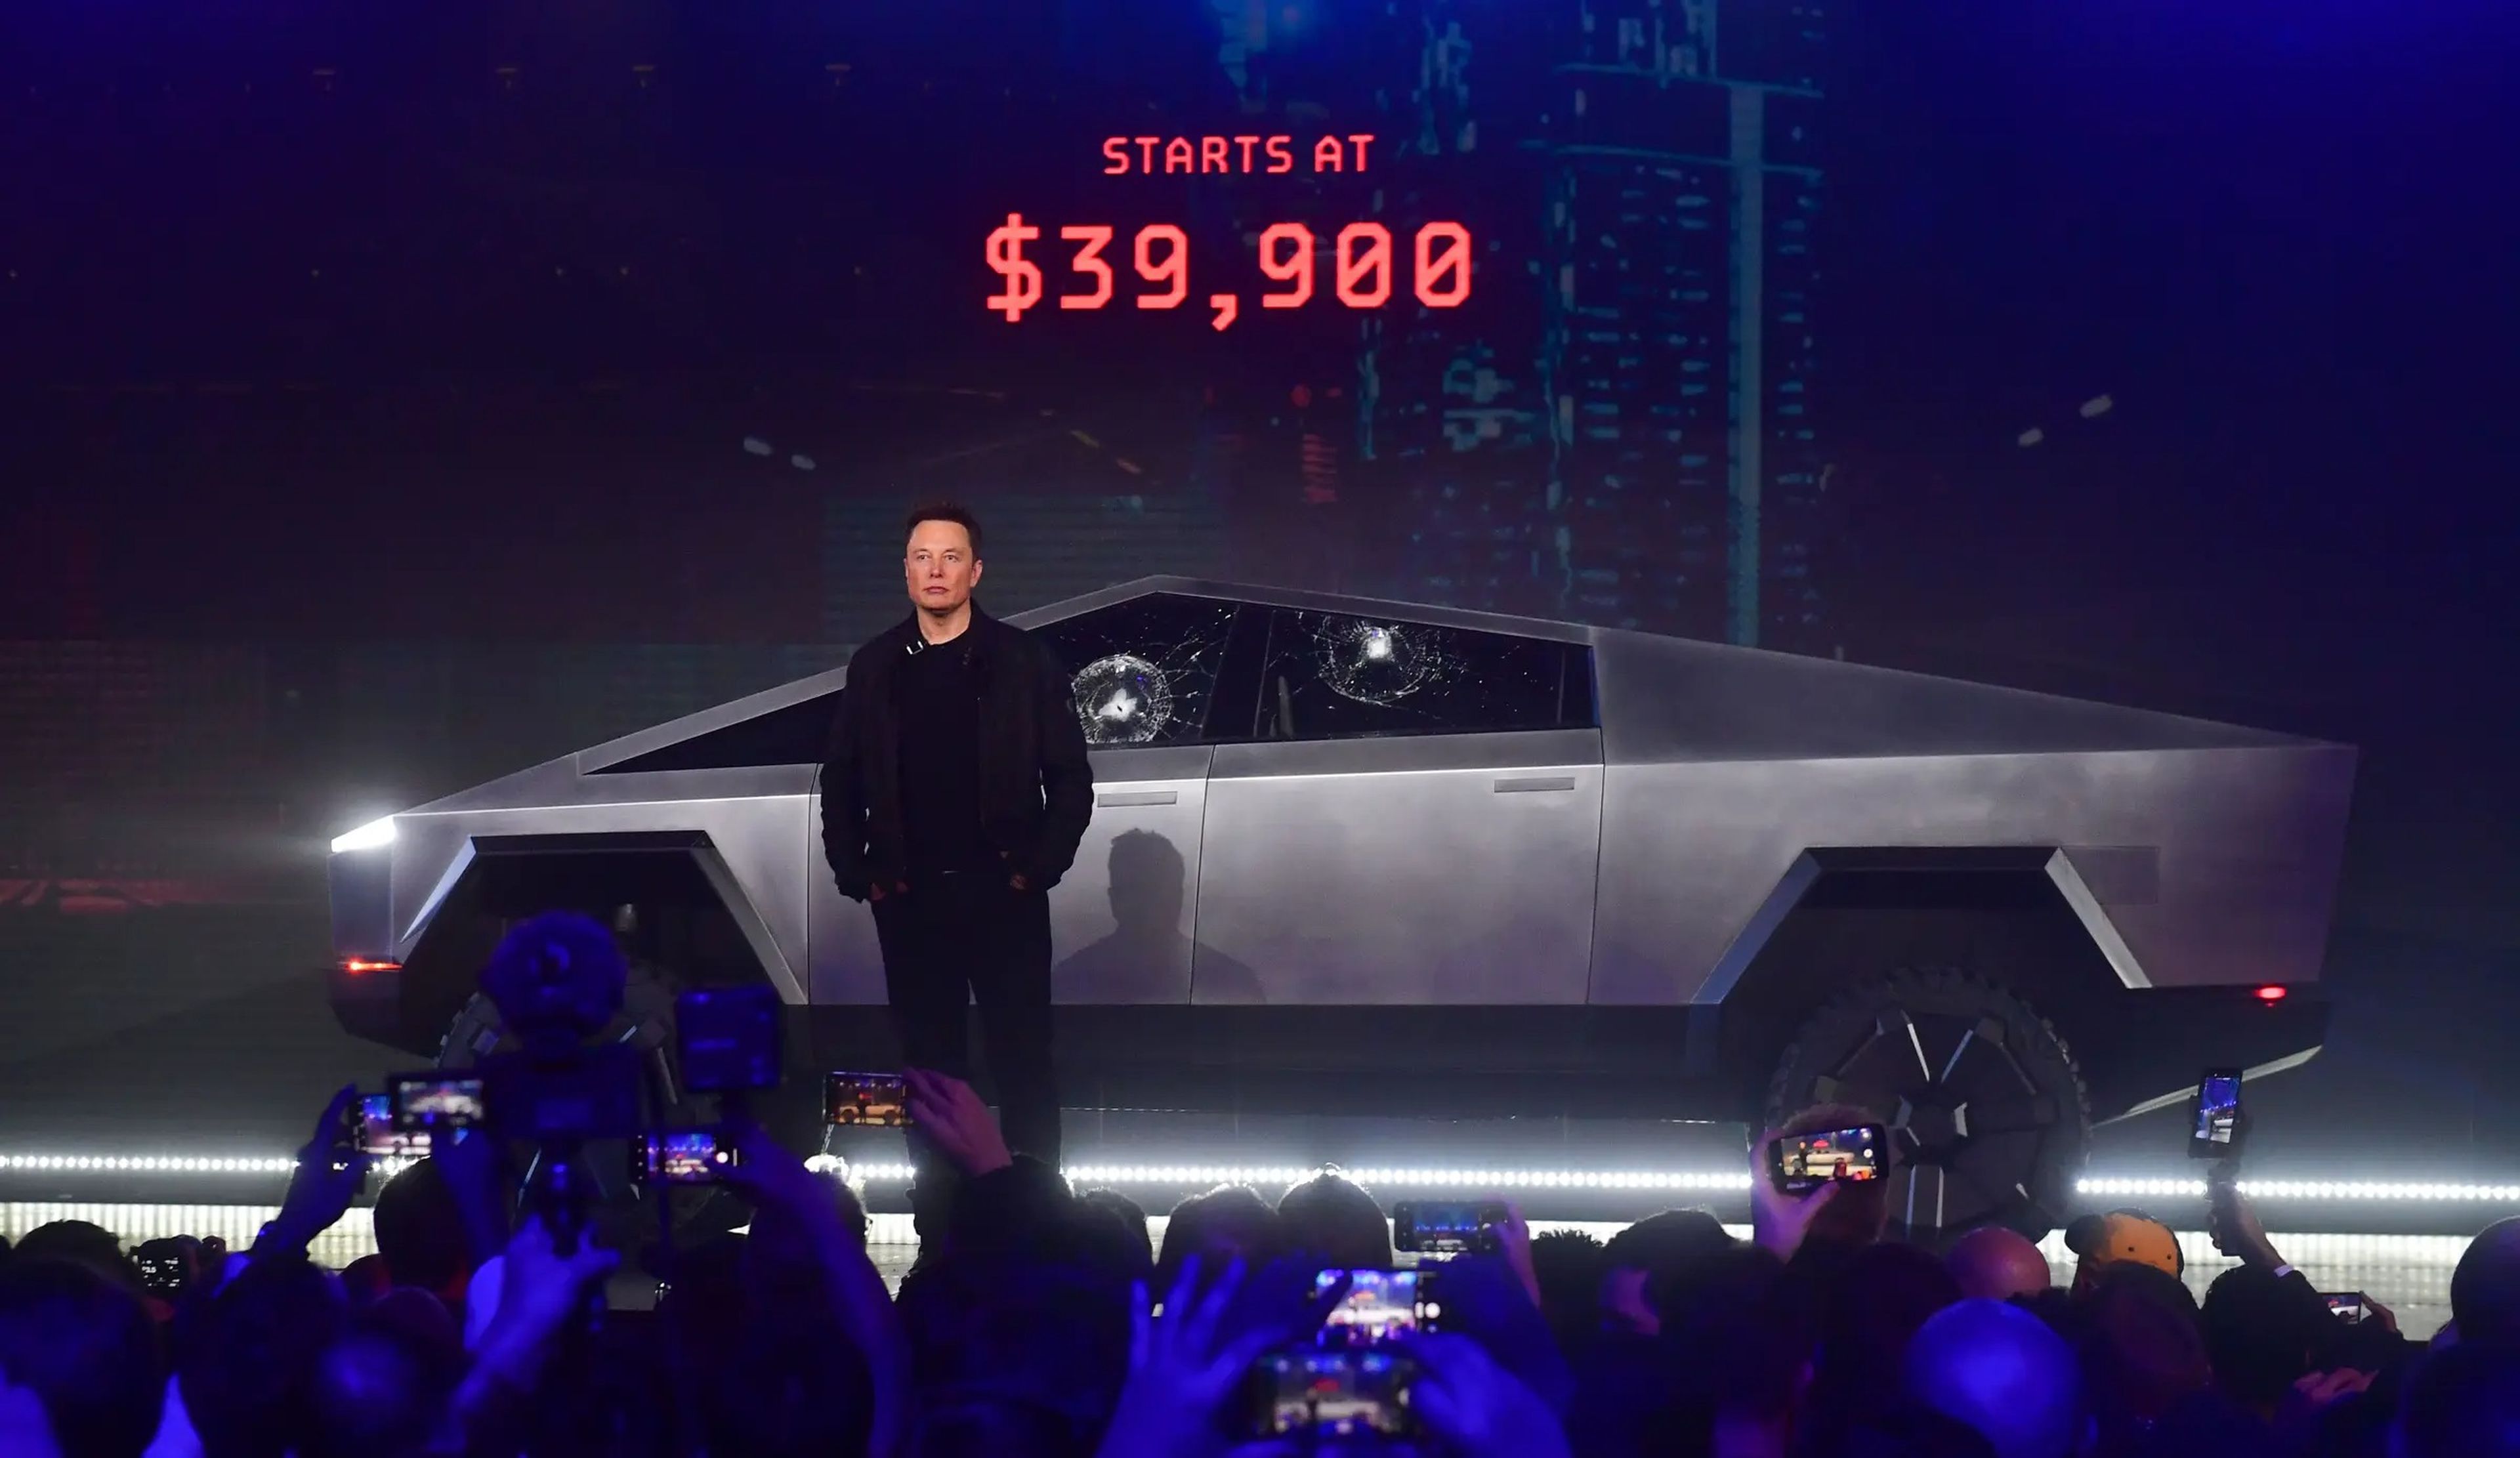 Elon Musk delante del Cybertruck totalmente eléctrico de Tesla en un escenario con el precio en luces rojas detrás de él.